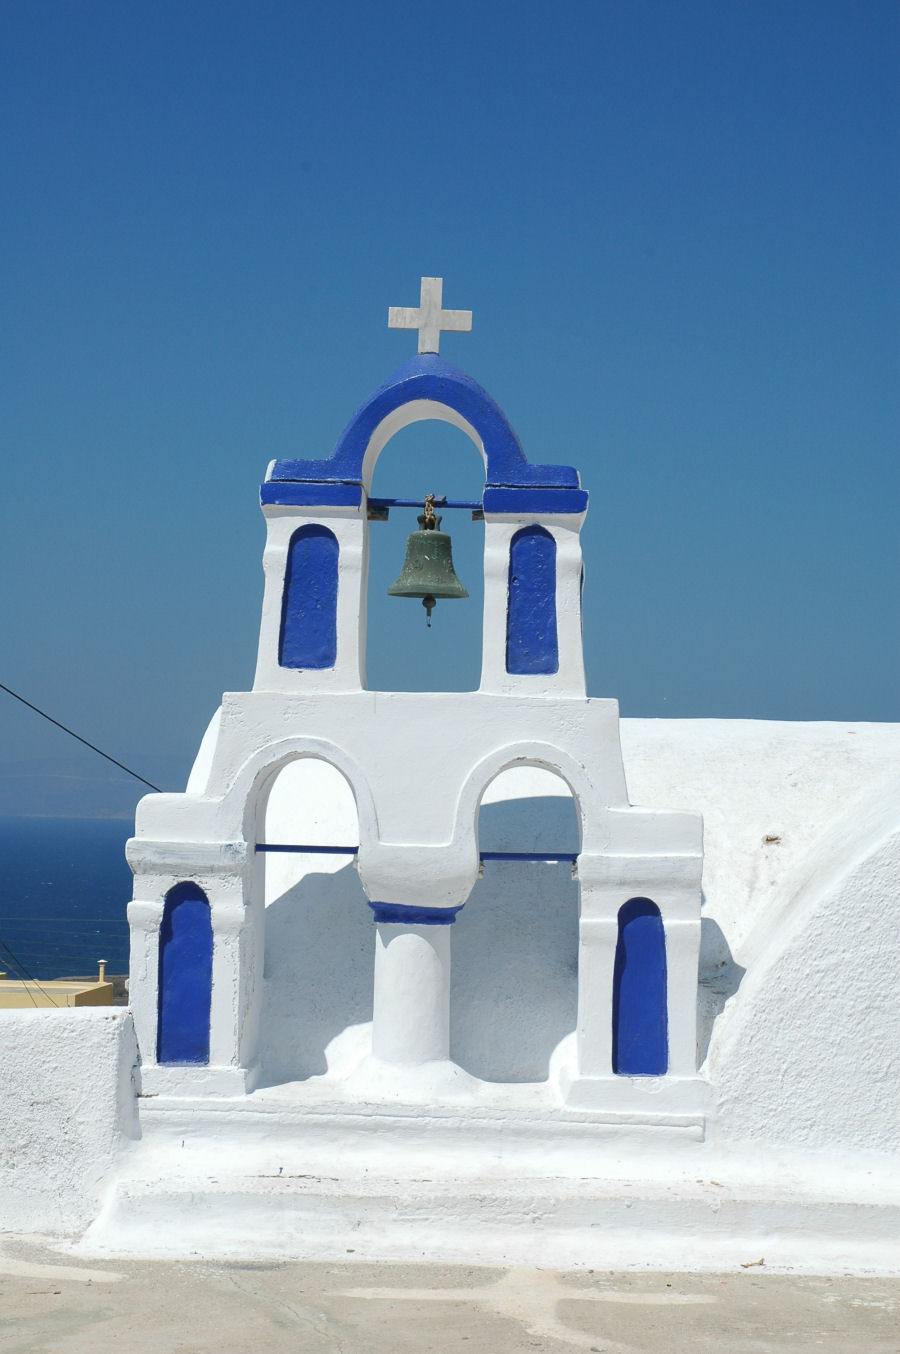 dzwonnica w stylu greckim